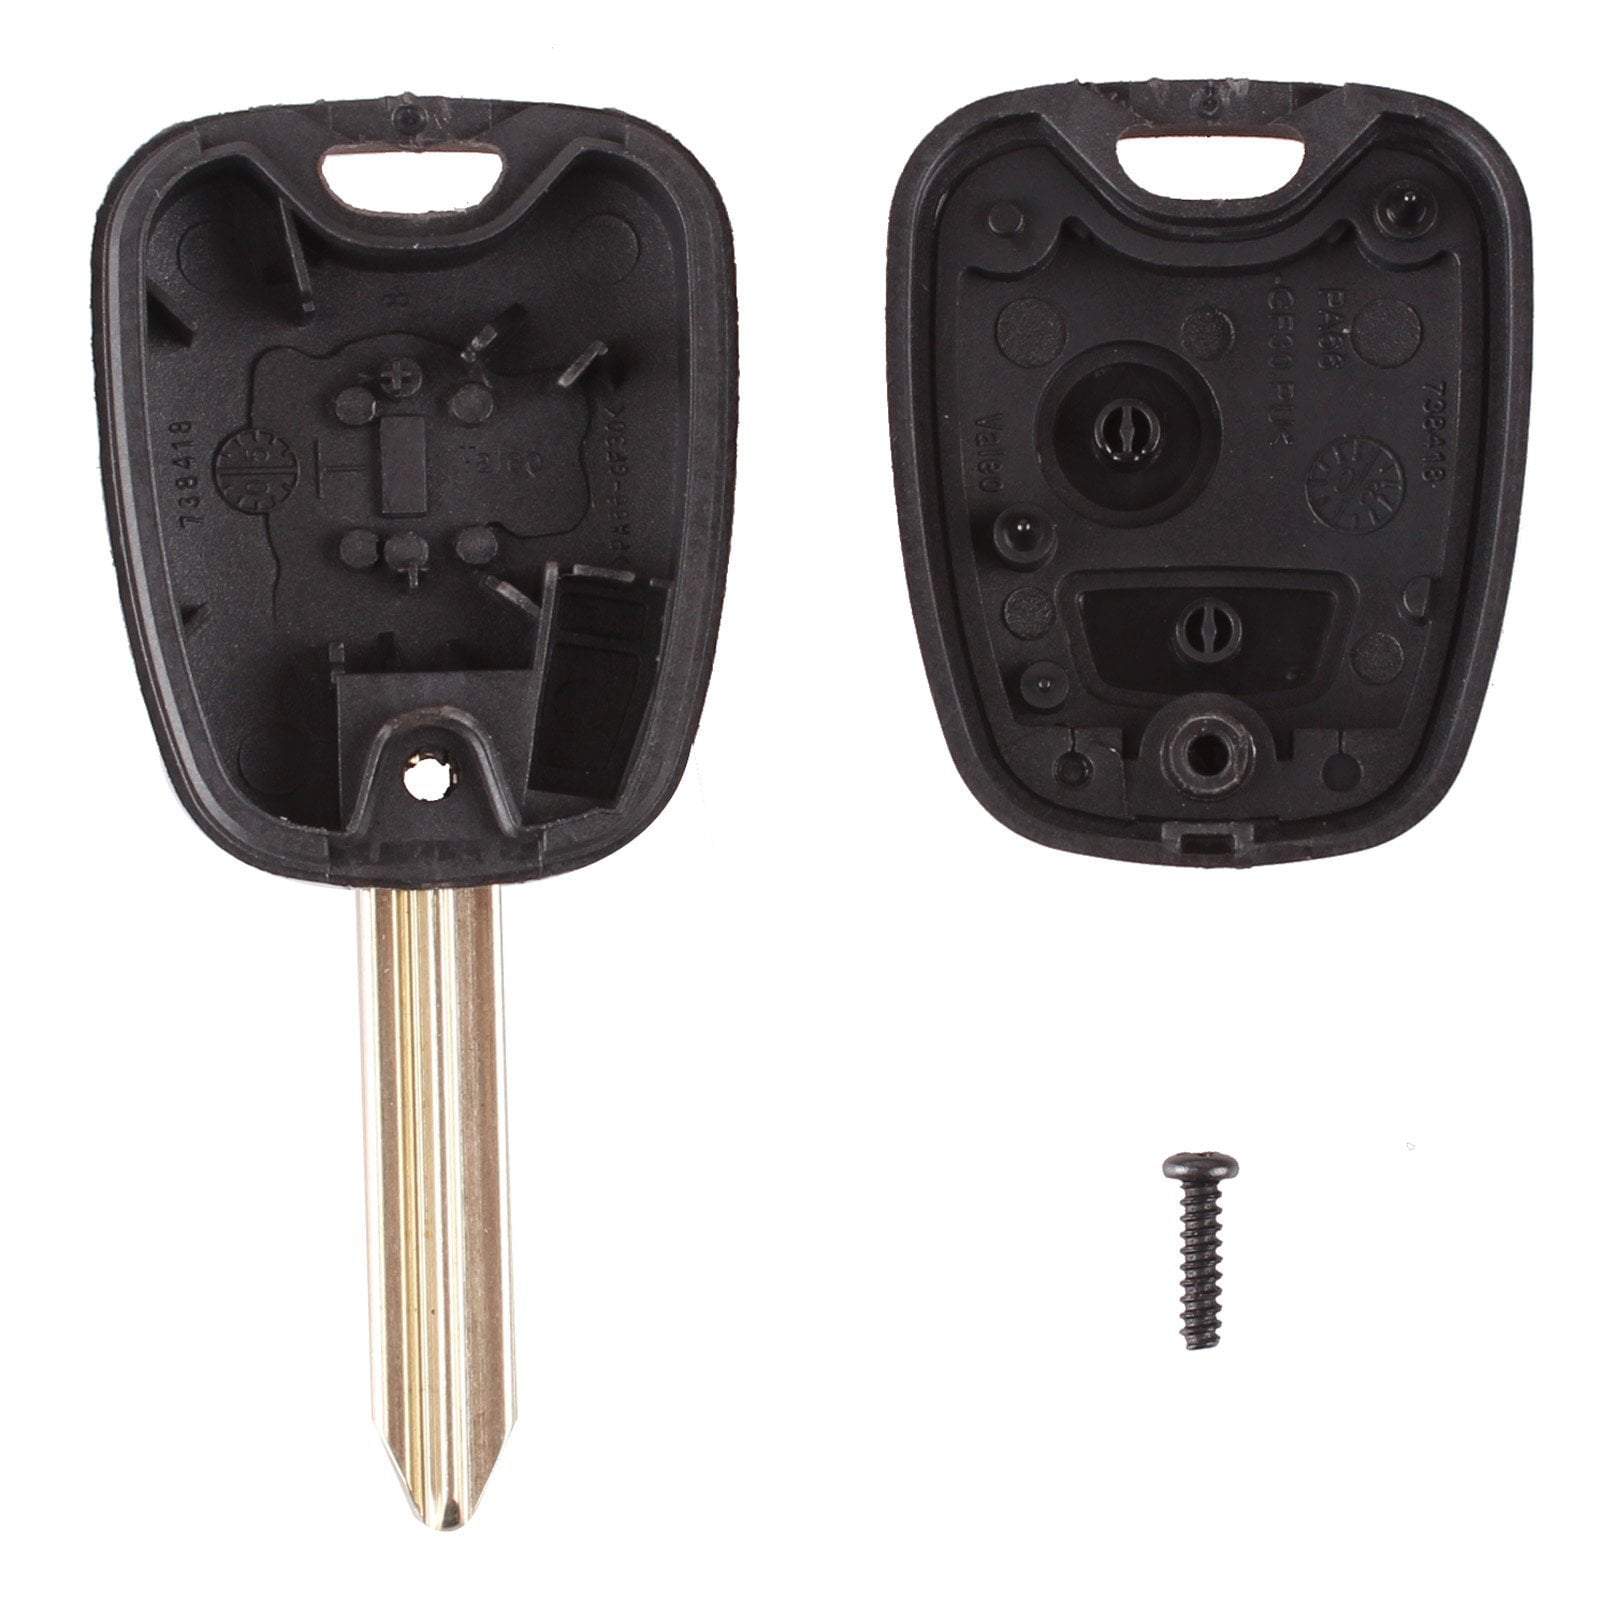 Fekete színű, 2 gombos Peugeot kulcs, kulcsház belseje. SX9 kulcsszárral.